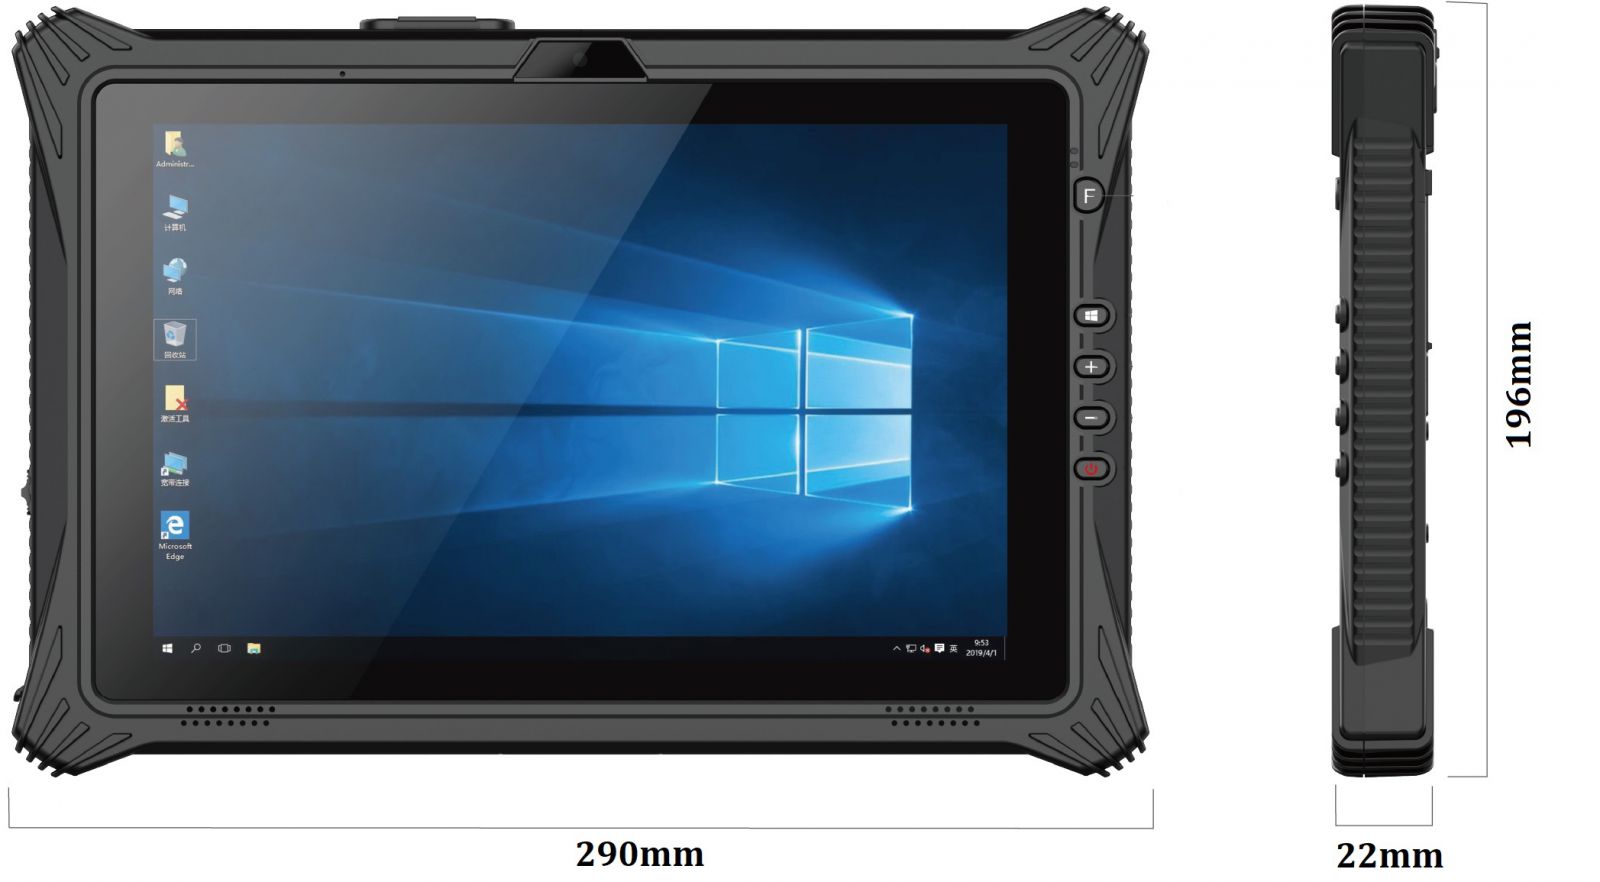 Przemysowy tablet z czytnikiem kodw 2D, Bluetooth 4.2, 8GB RAM, 128GB ROM, NFC, 4G i Windows 10 IoT - Emdoor I10U v.7